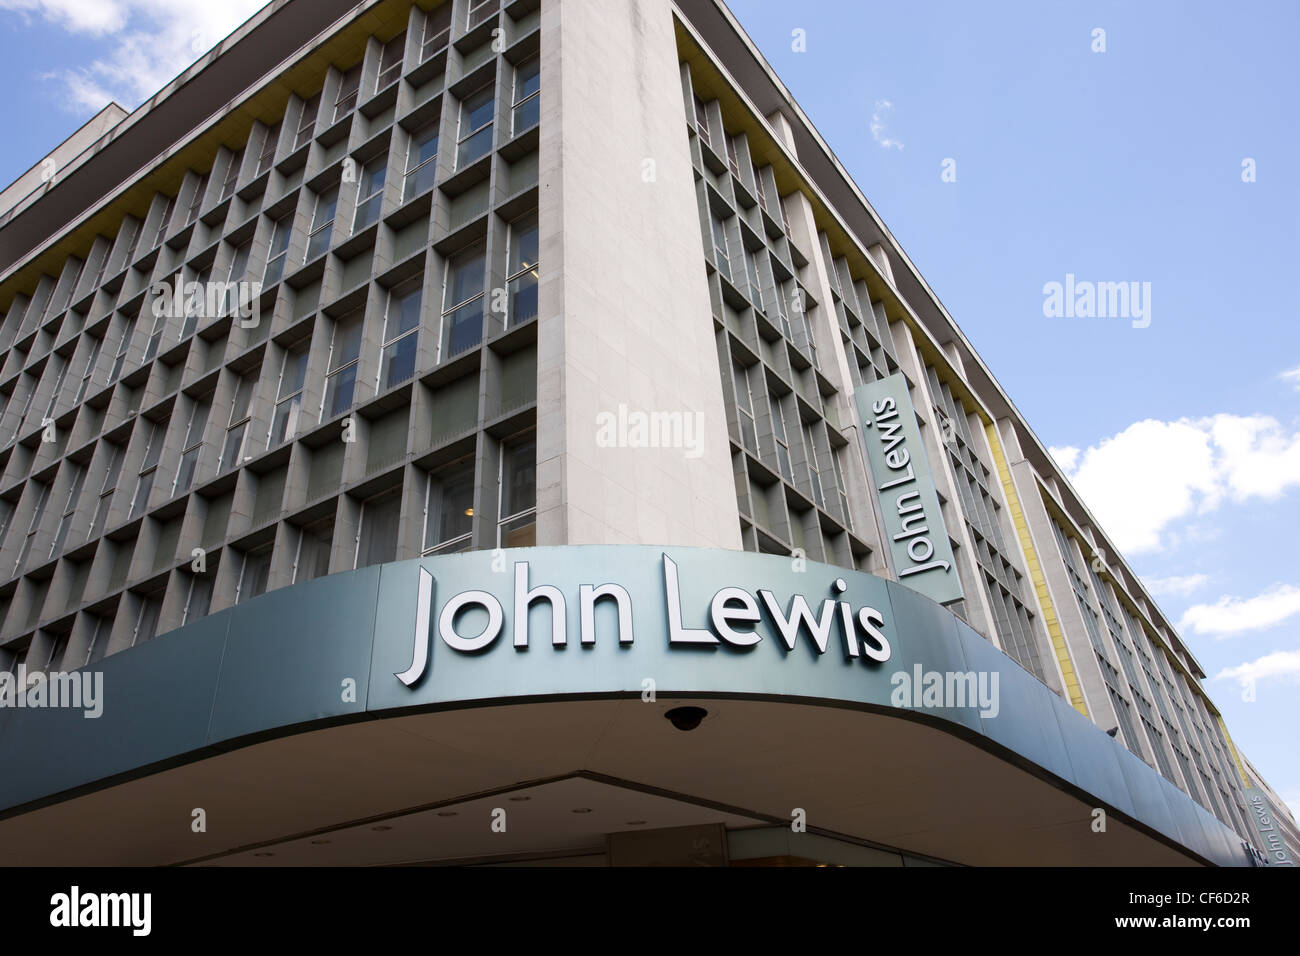 John Lewis department store on Oxford Street Stock Photo